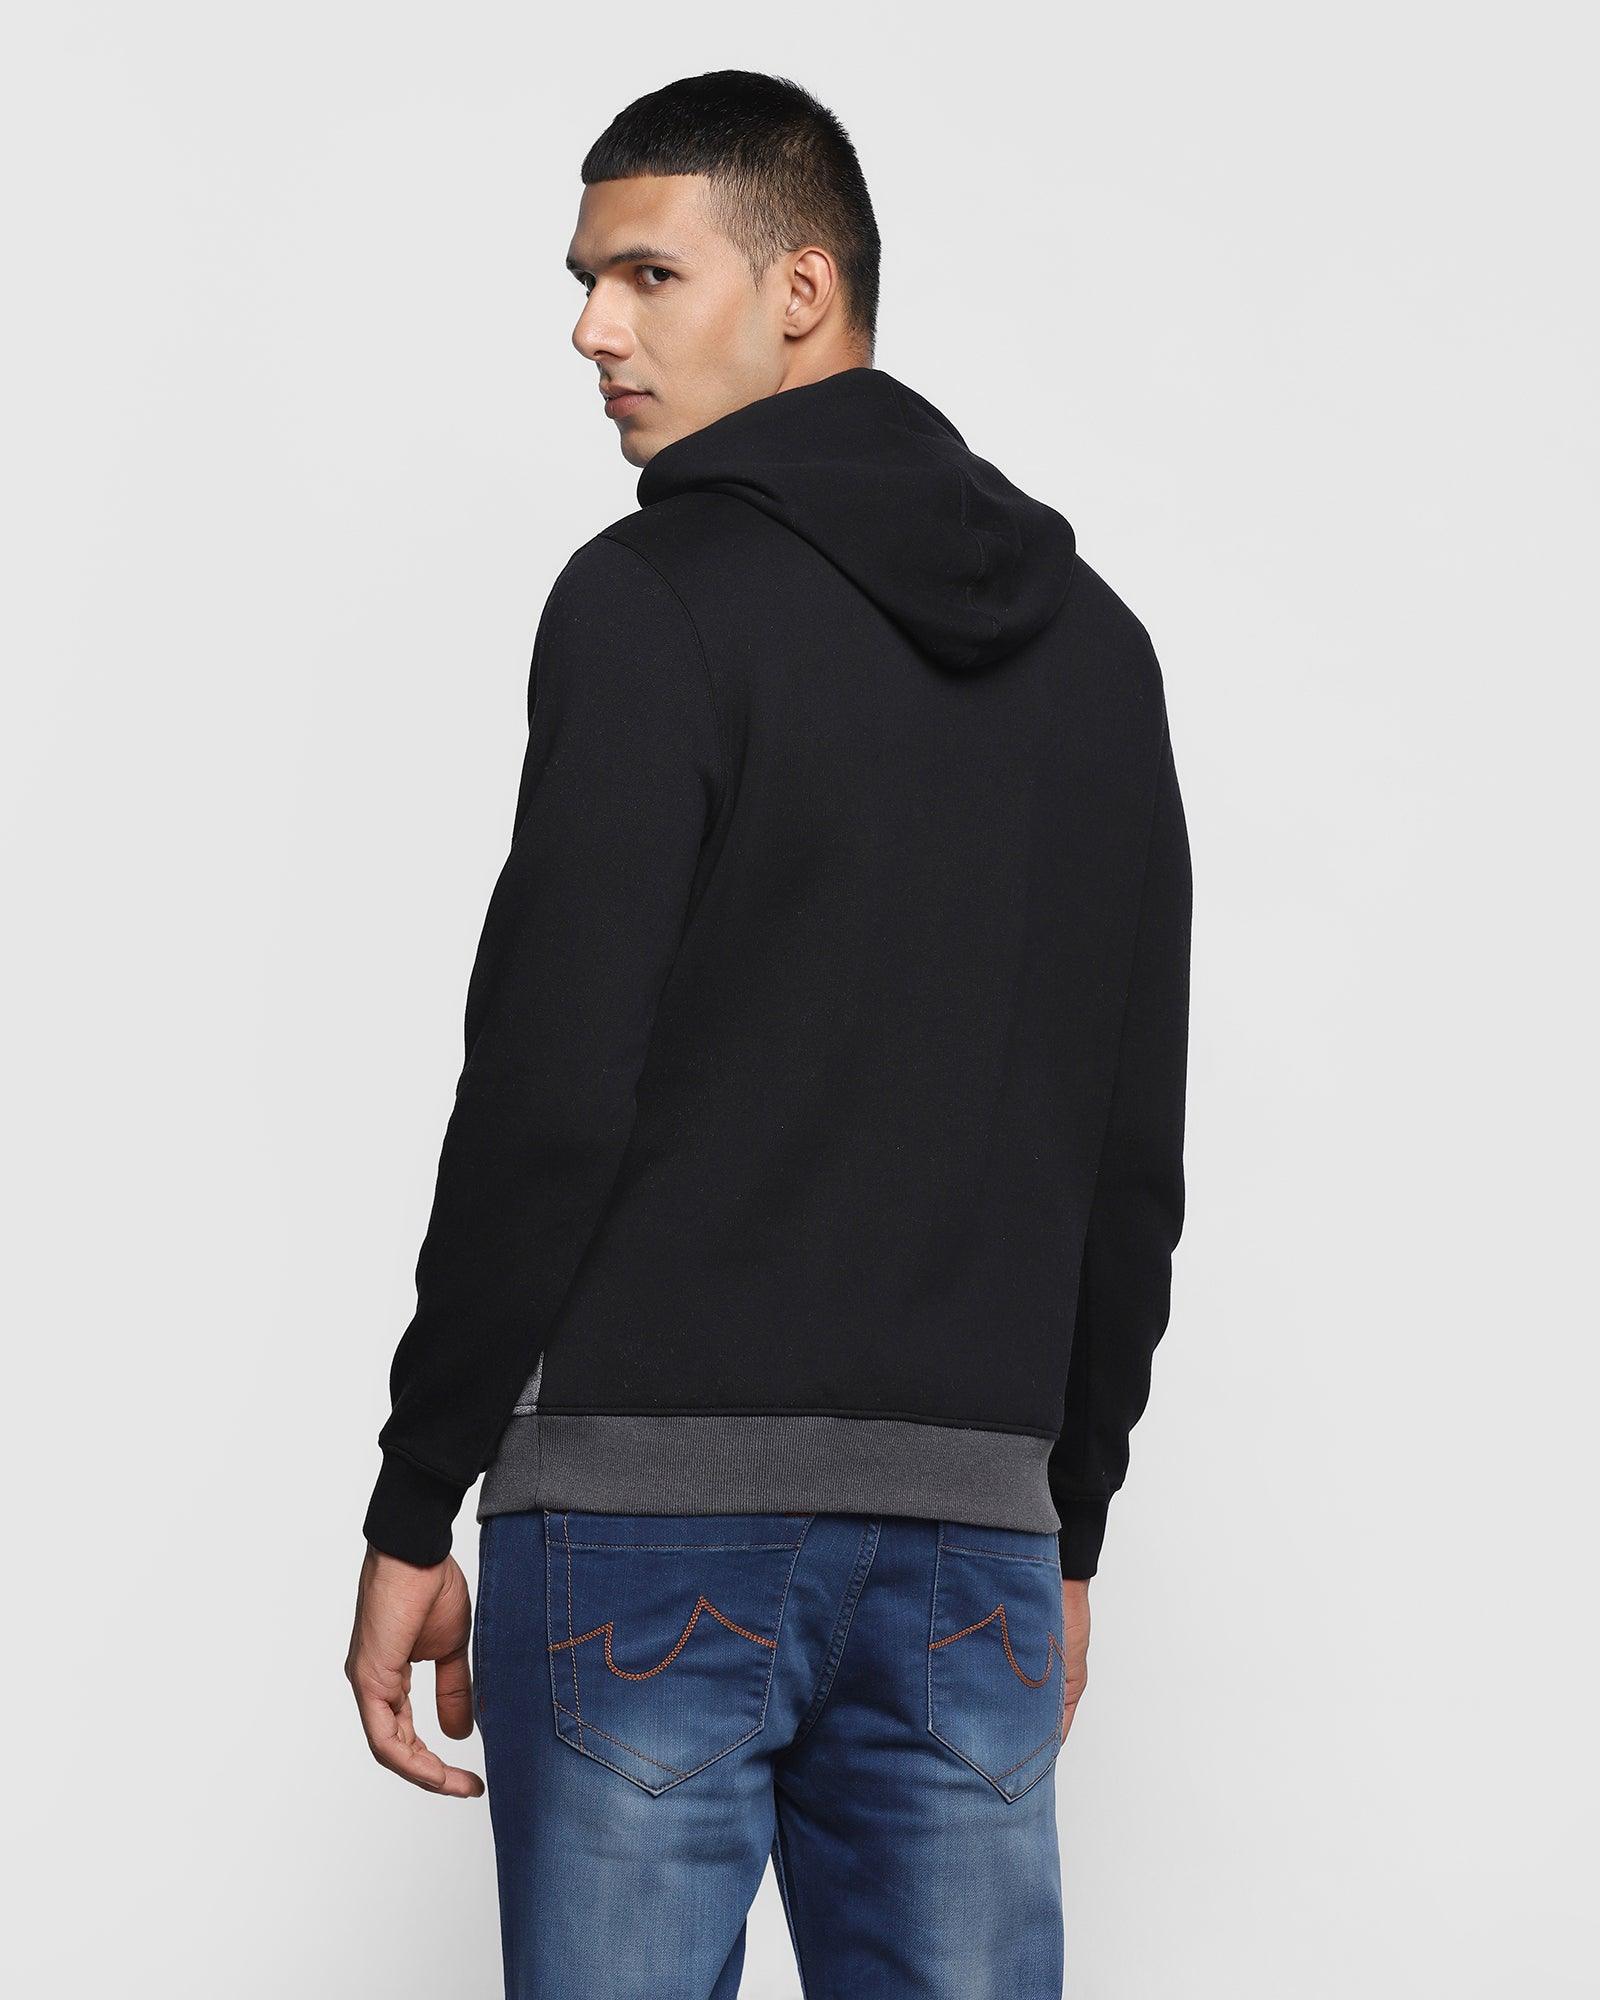 Hoodie Black Solid Sweatshirt - Dolo